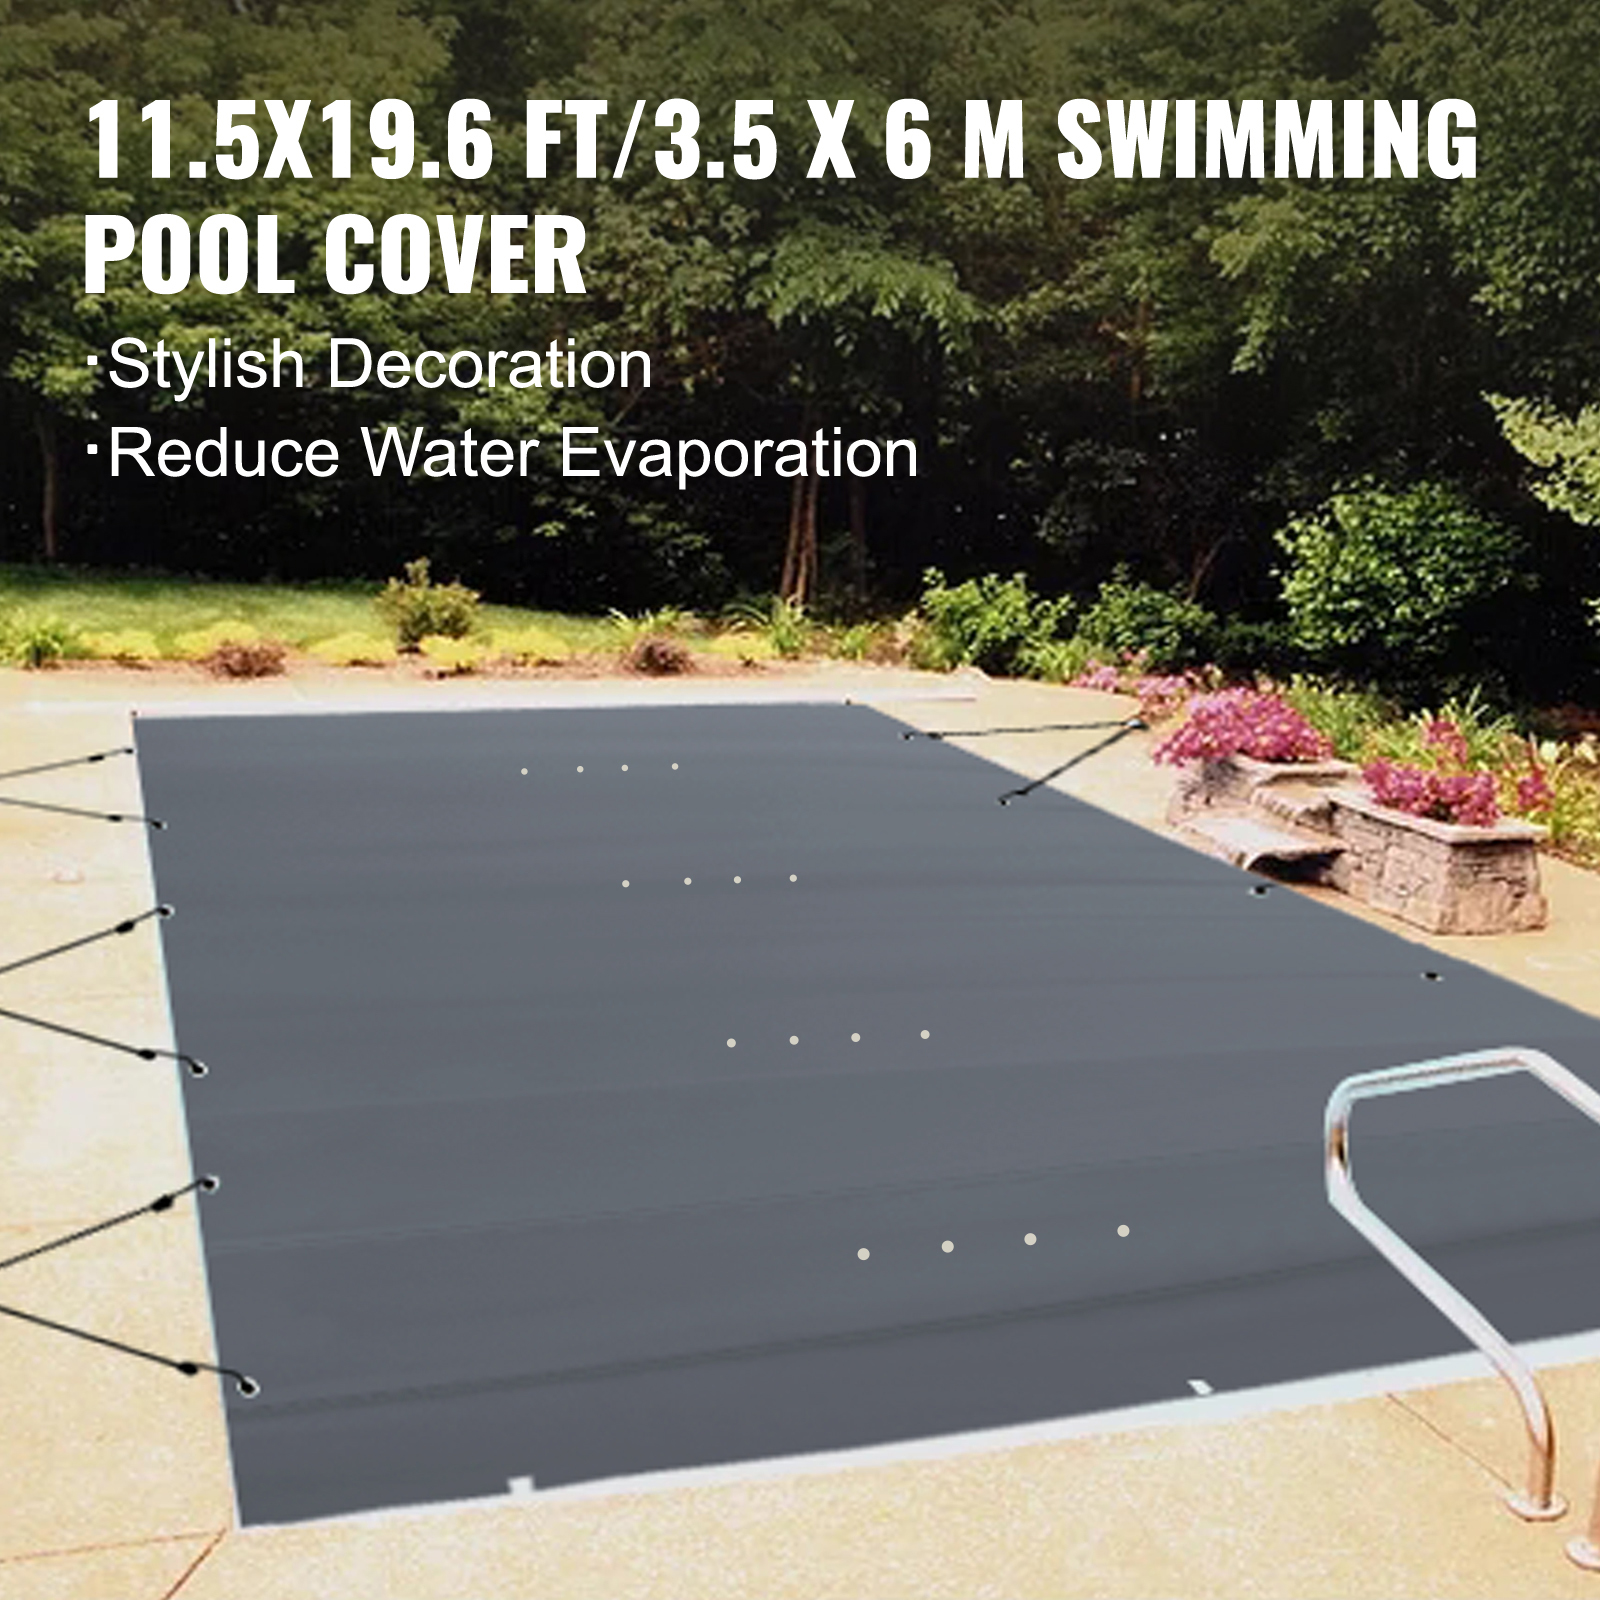 VEVOR medence ponyva téglalap alakú 3,5 x 6 m úszómedence burkolat PVC szén medencetakaró vízálló medence baldachin téli ponyva téglalap medence ponyva szennyeződéstaszító ponyva medencéhez